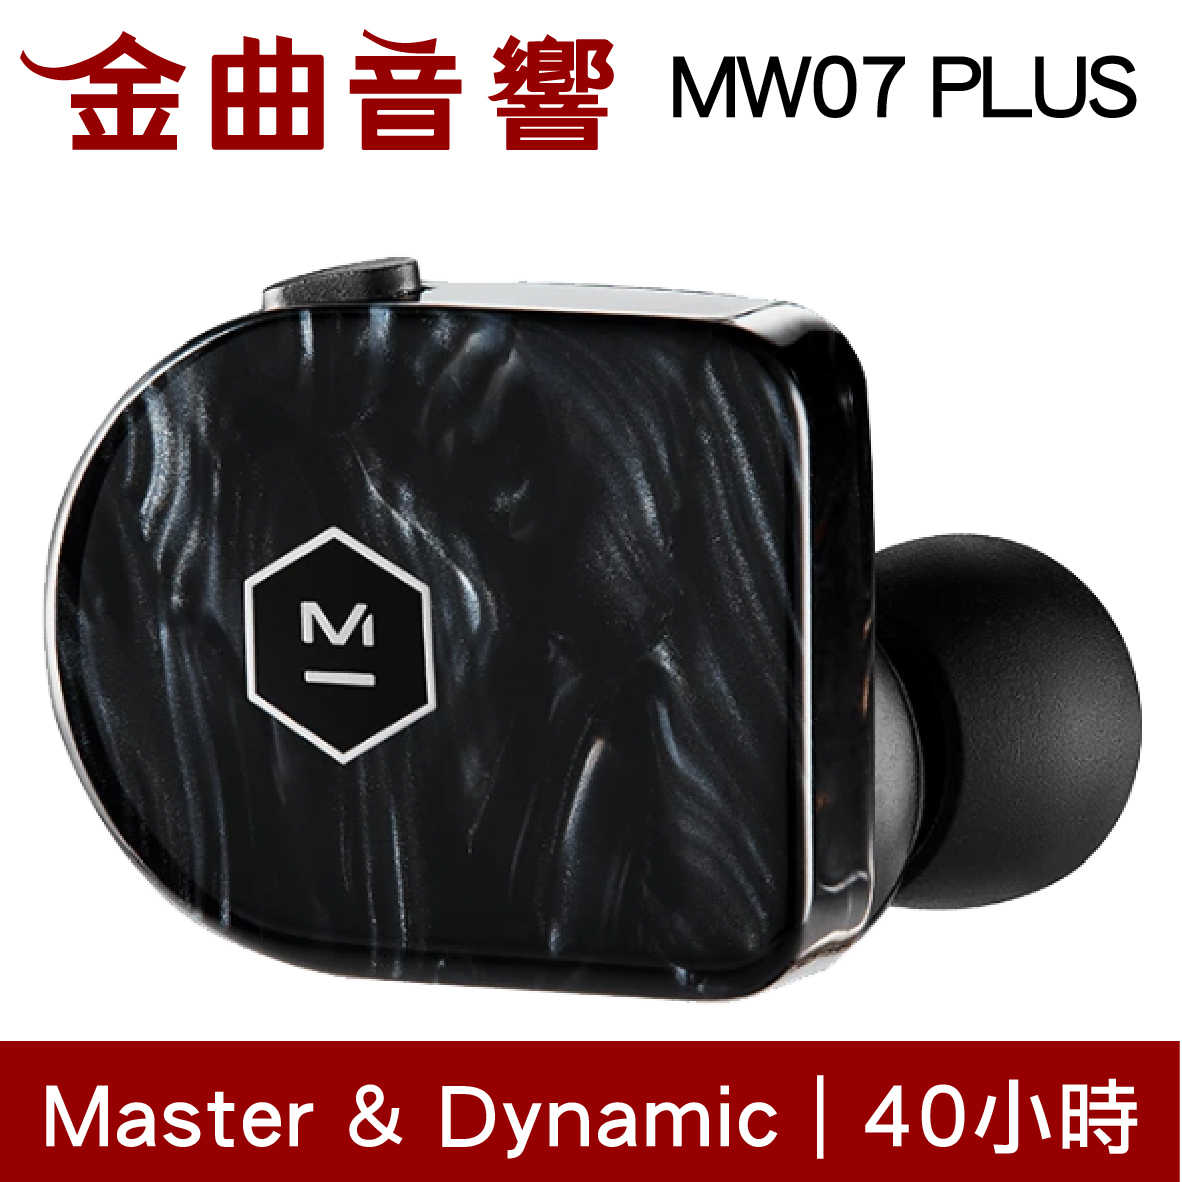 【福利機Ａ組】Master & Dynamic MW07 PLUS 石英黑 真無線耳機 | 金曲音響